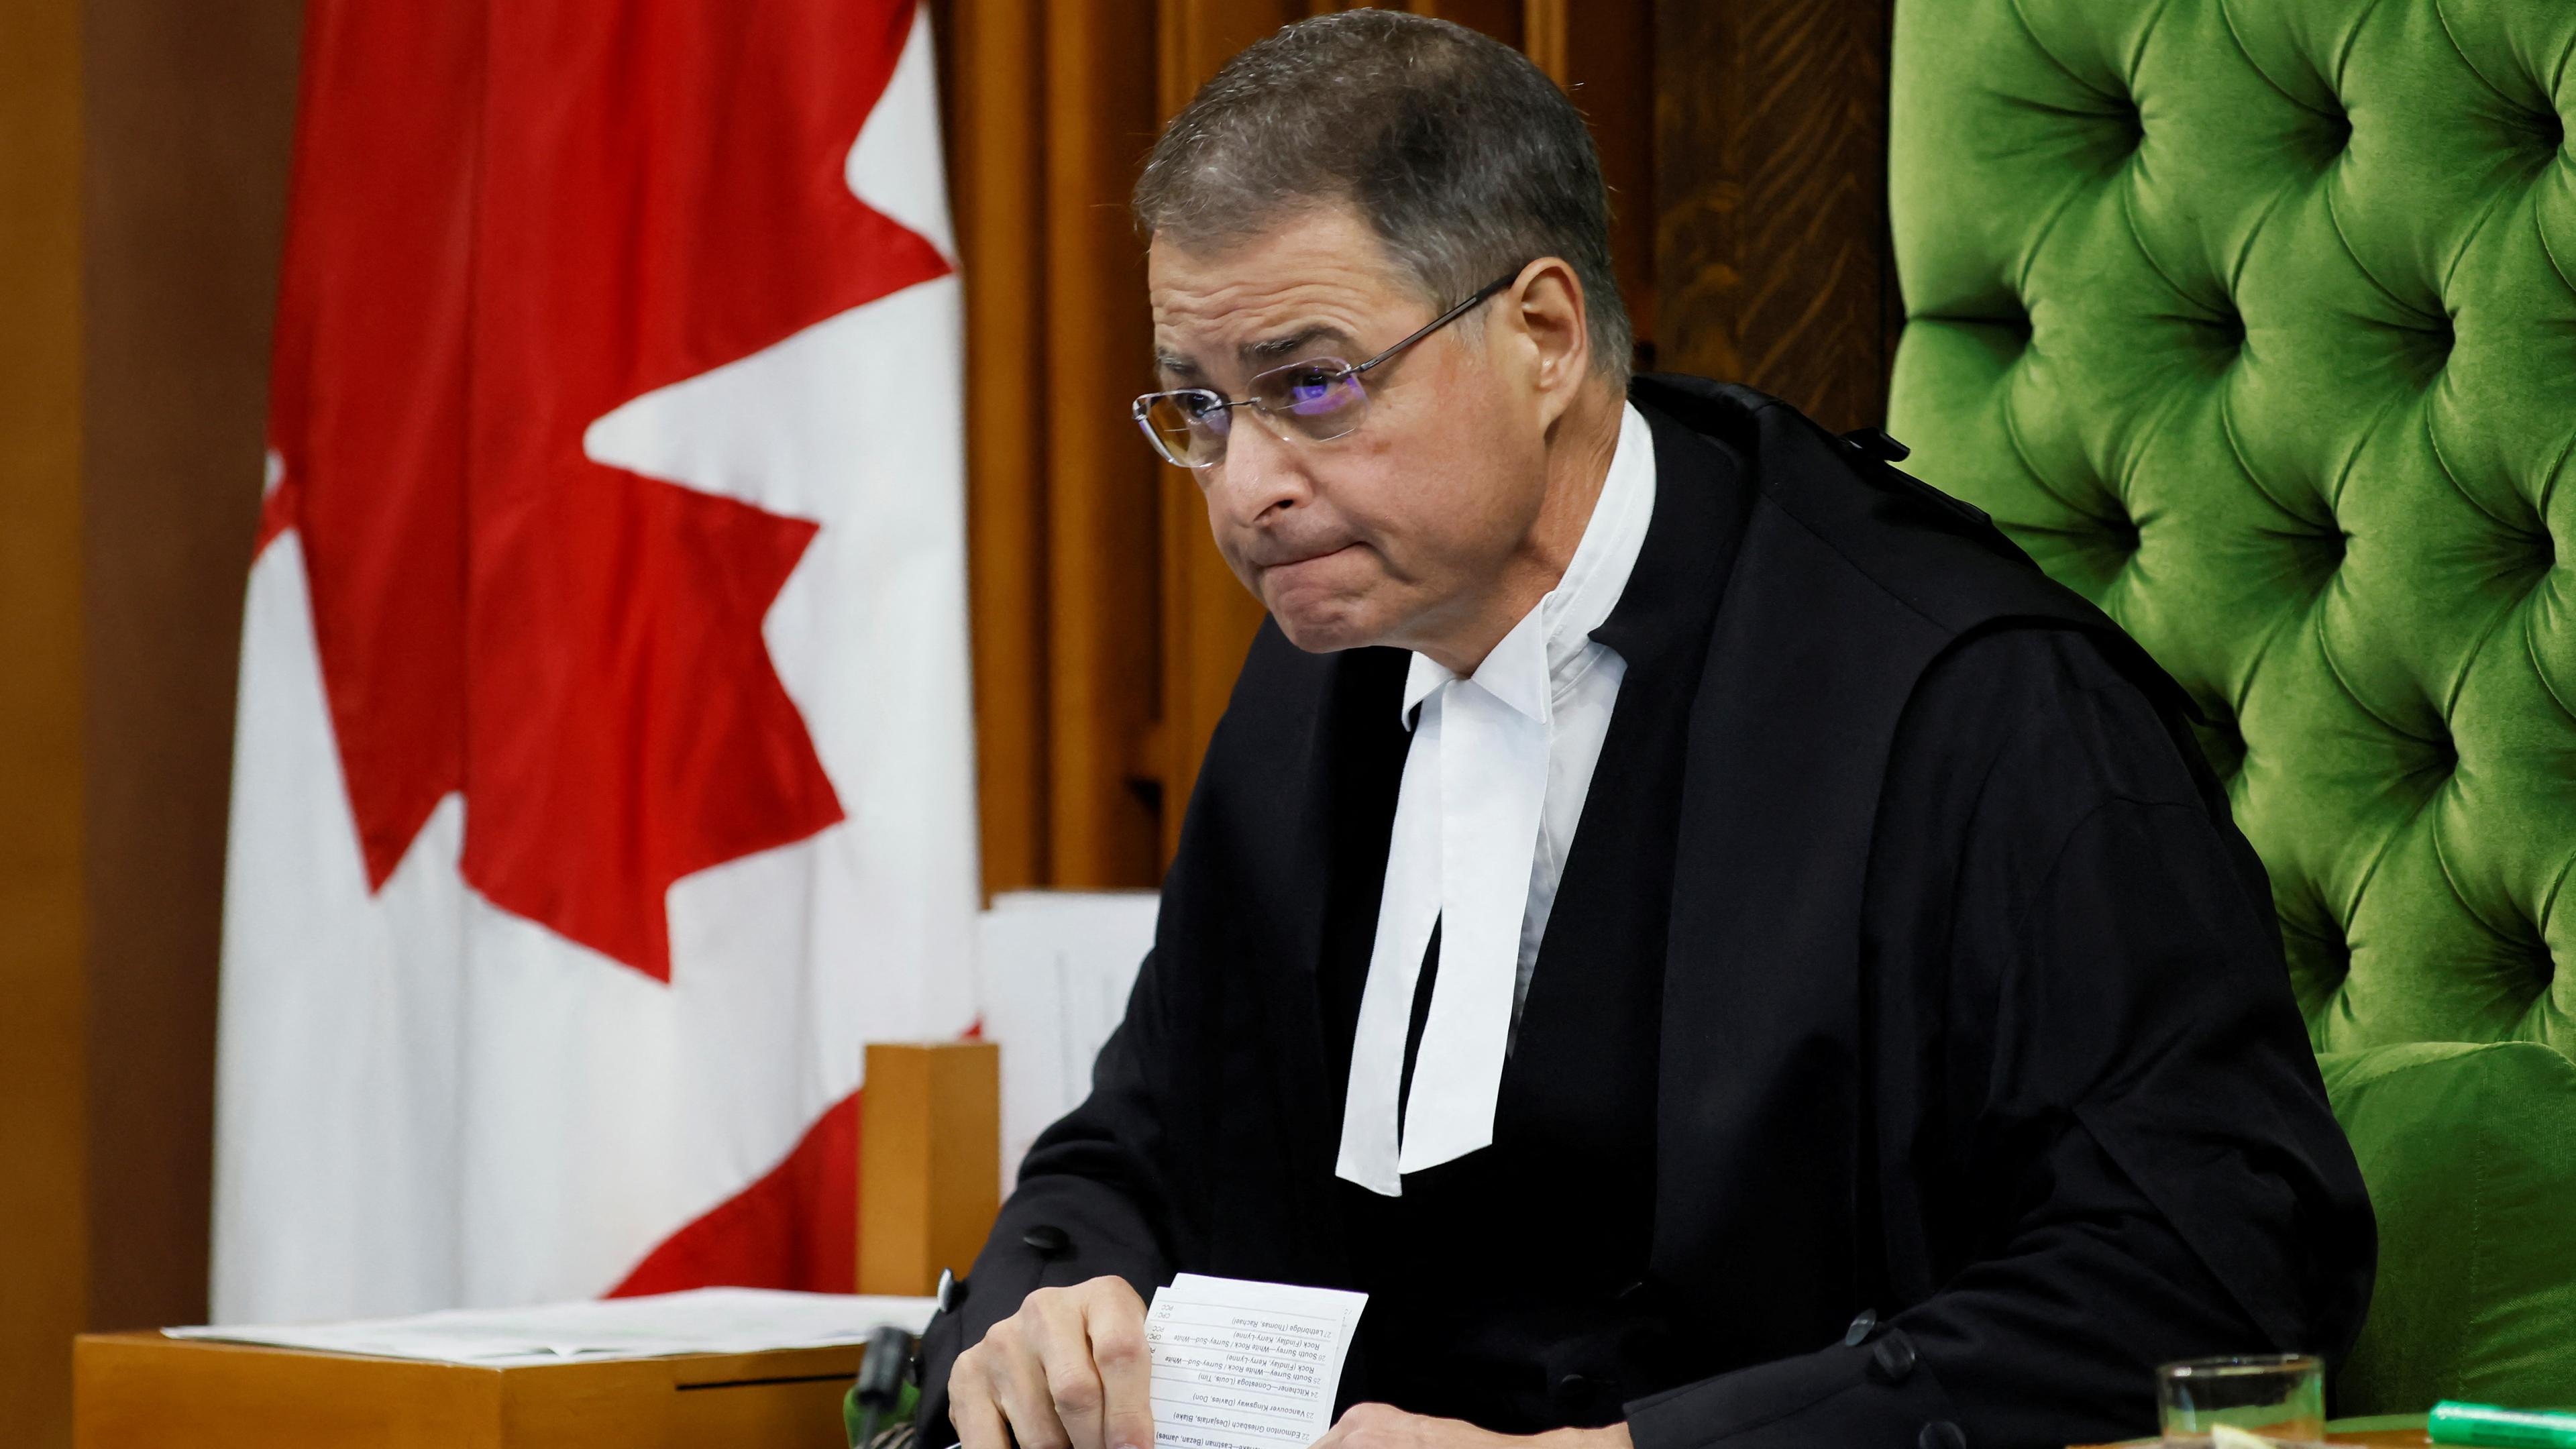 Der Sprecher des Unterhauses Anthony Rota während der Fragestunde auf dem Parliament Hill in Ottawa, Ontario, Kanada.